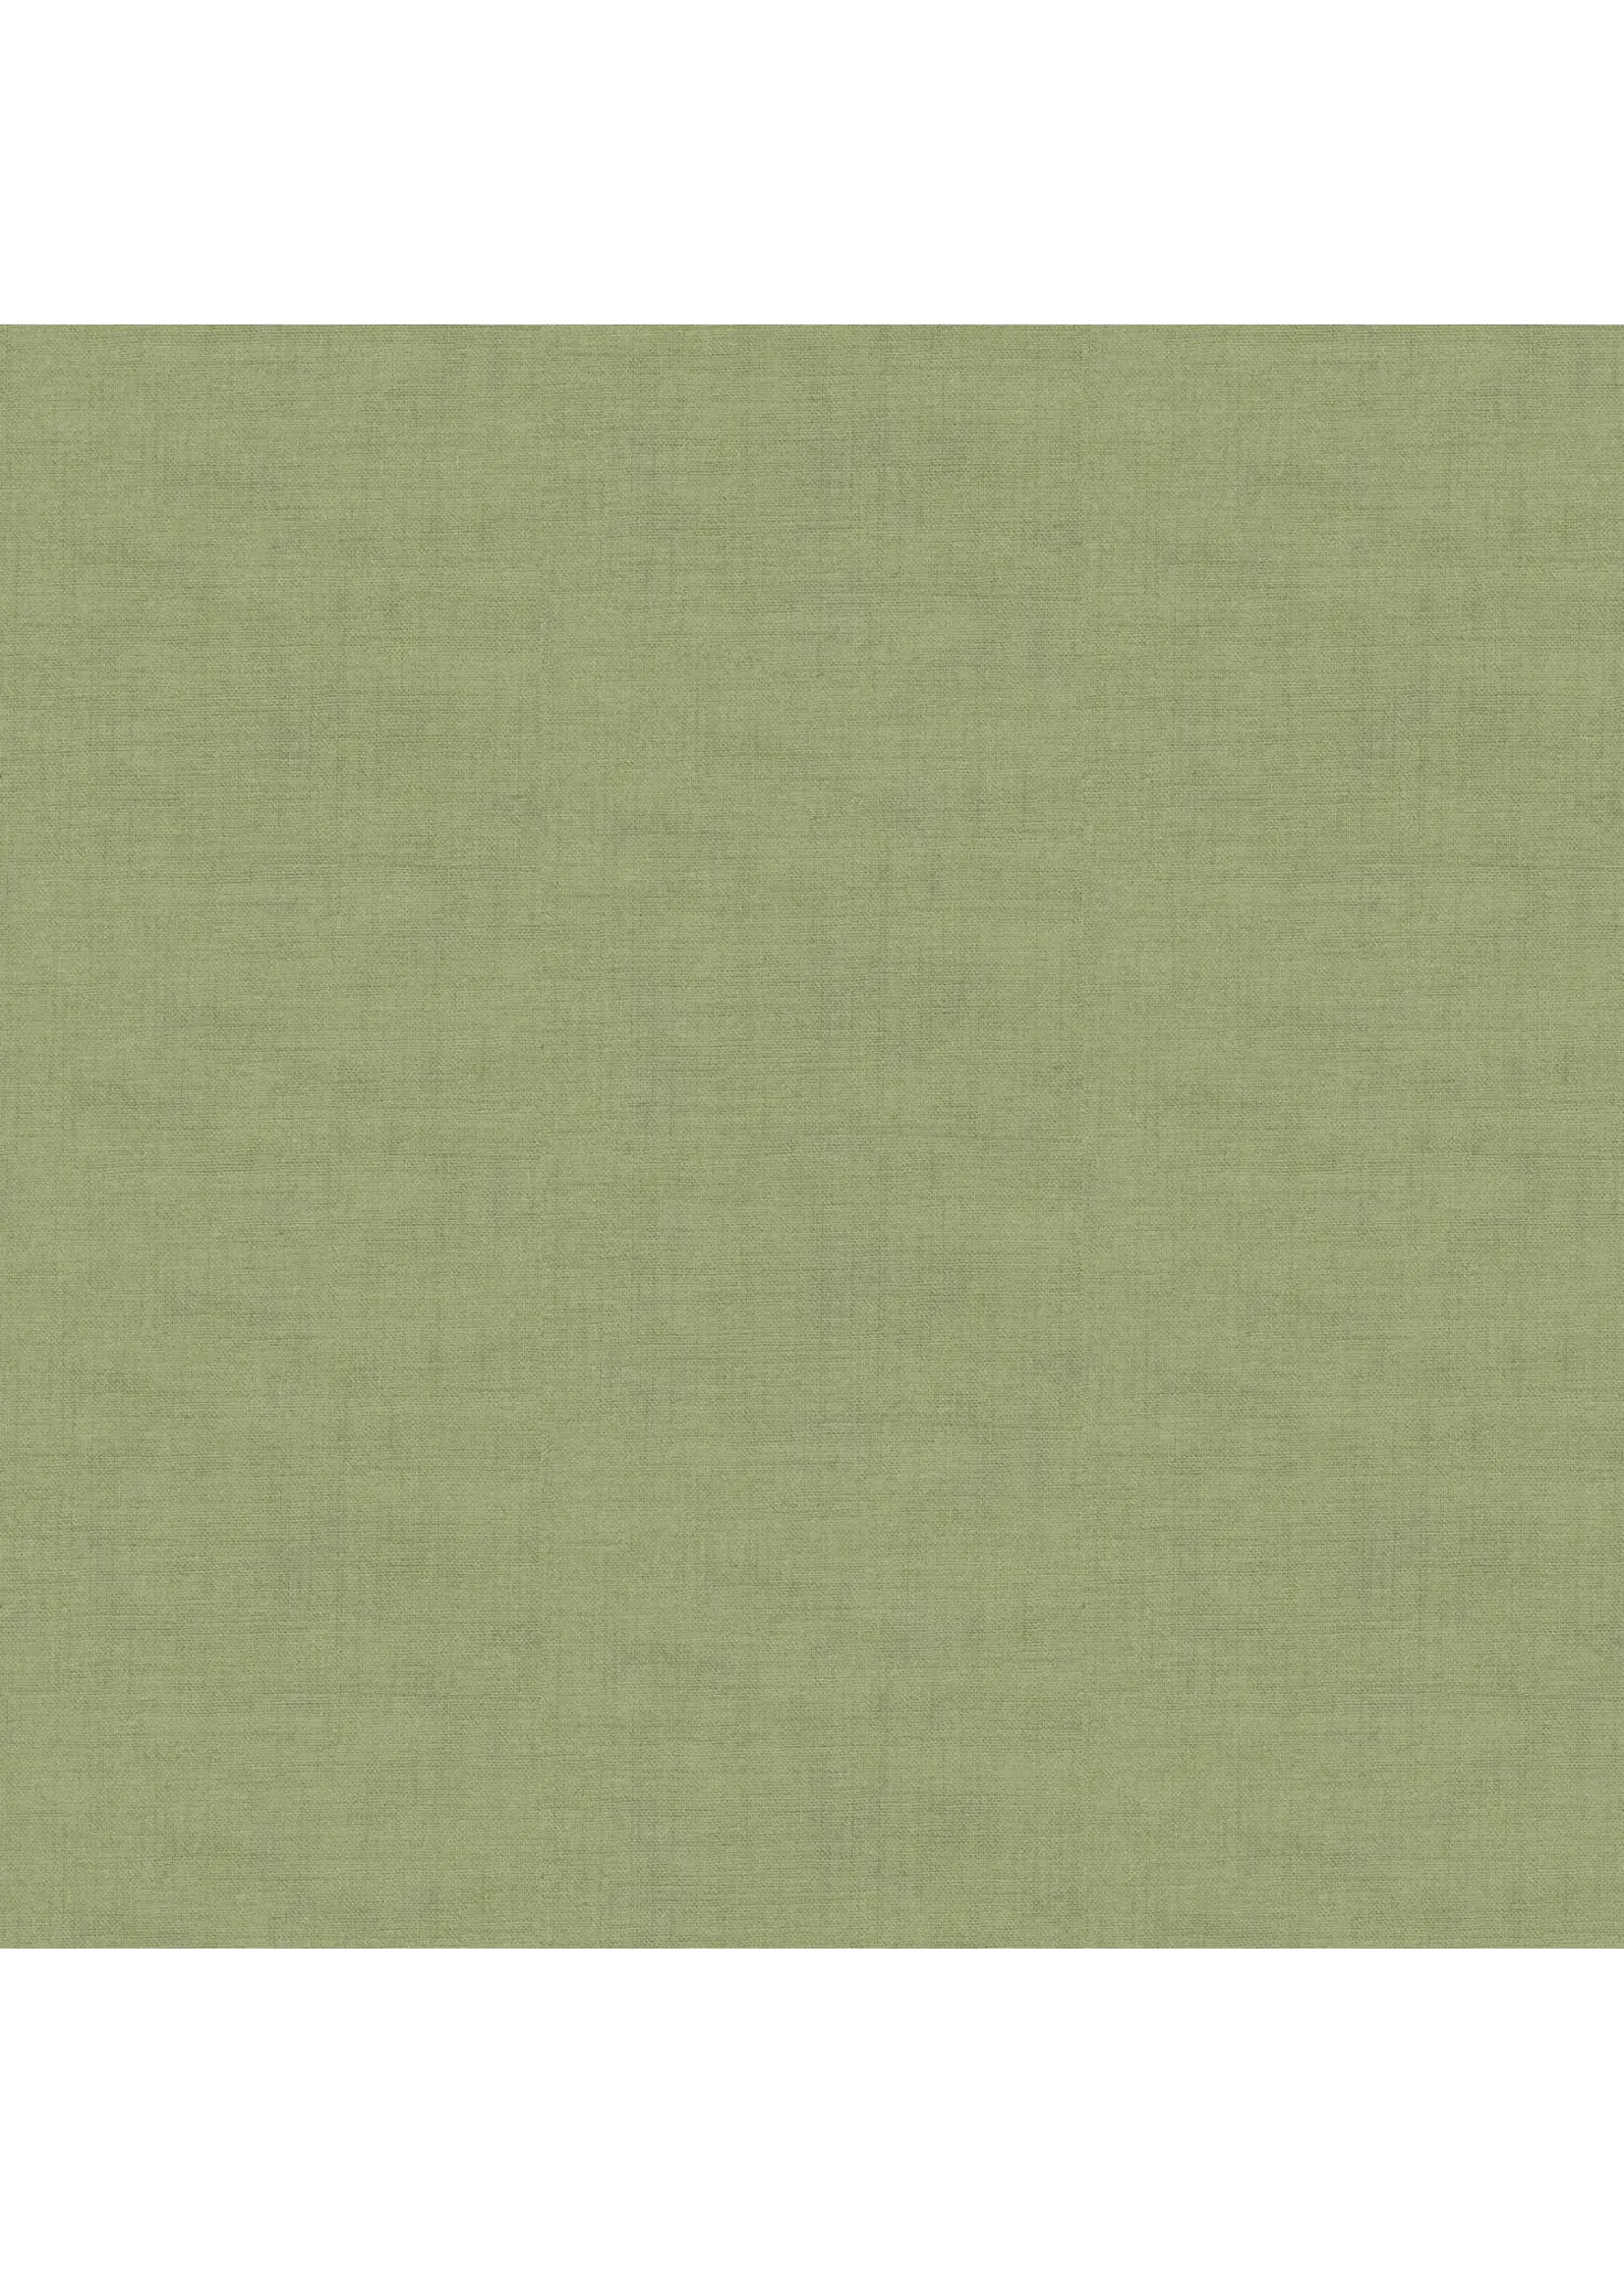 Makower Linen Texture - Sage - 1473G4